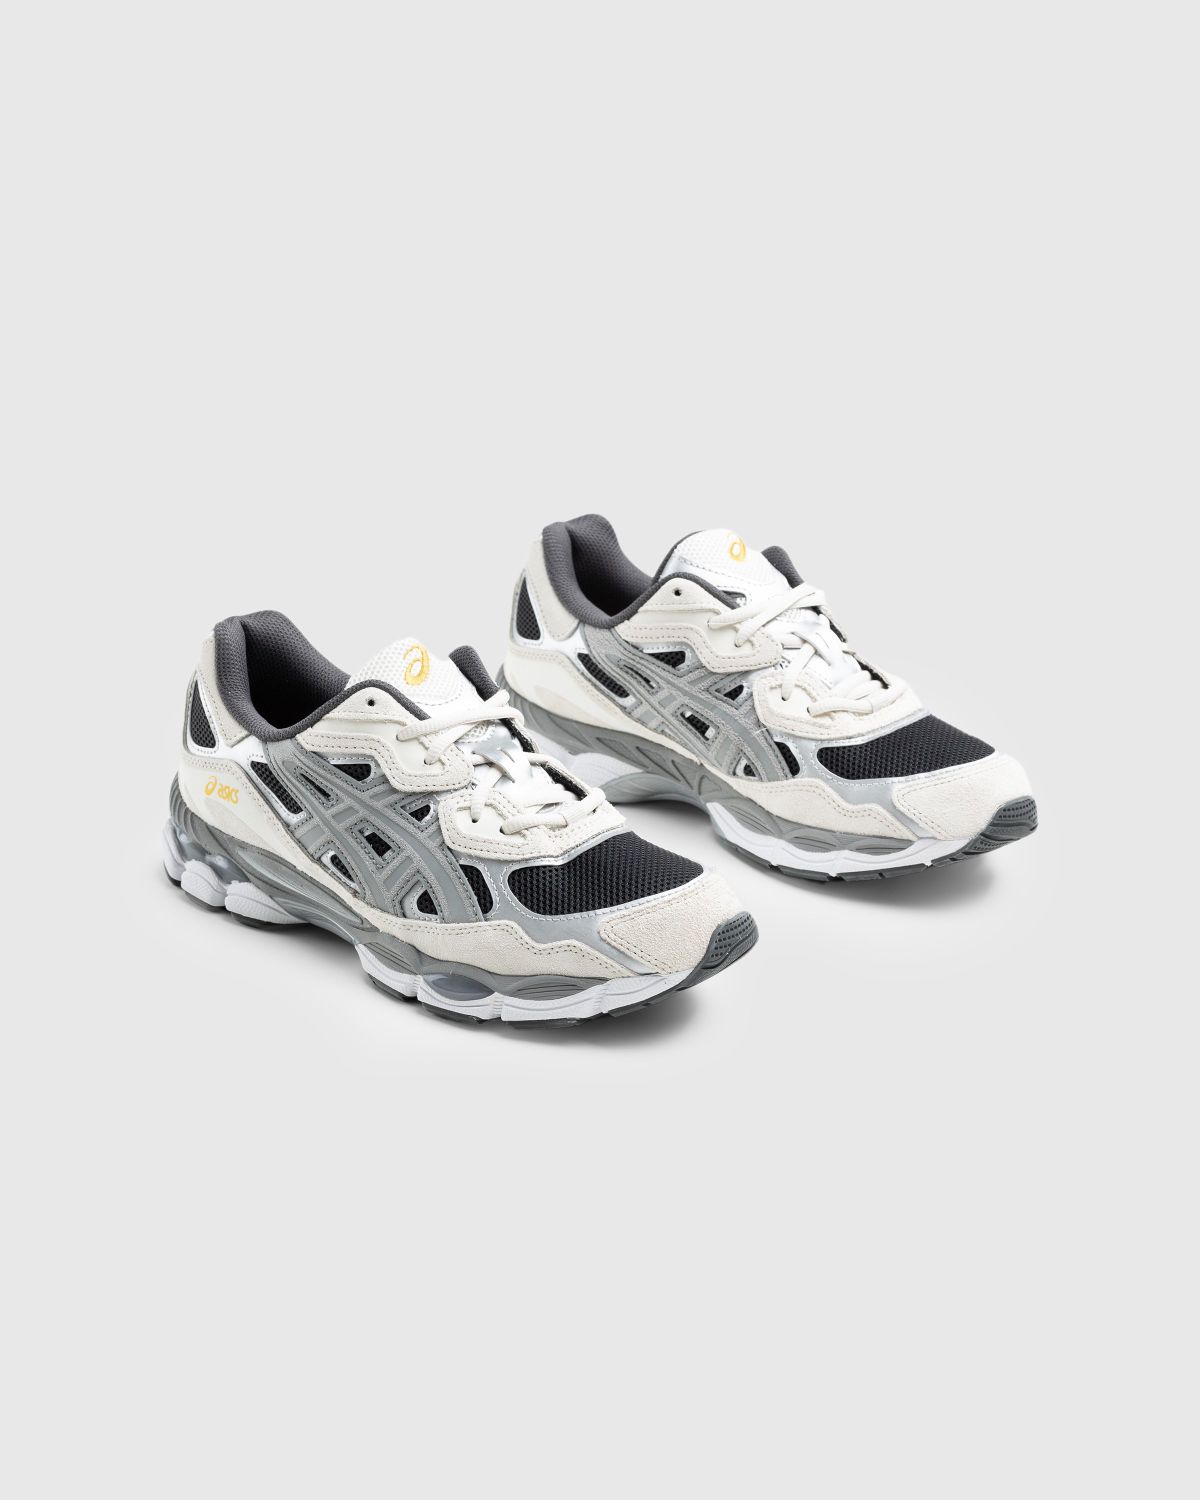 asics – GEL-NYC Black/Clay Grey - Low Top Sneakers - Grey - Image 3